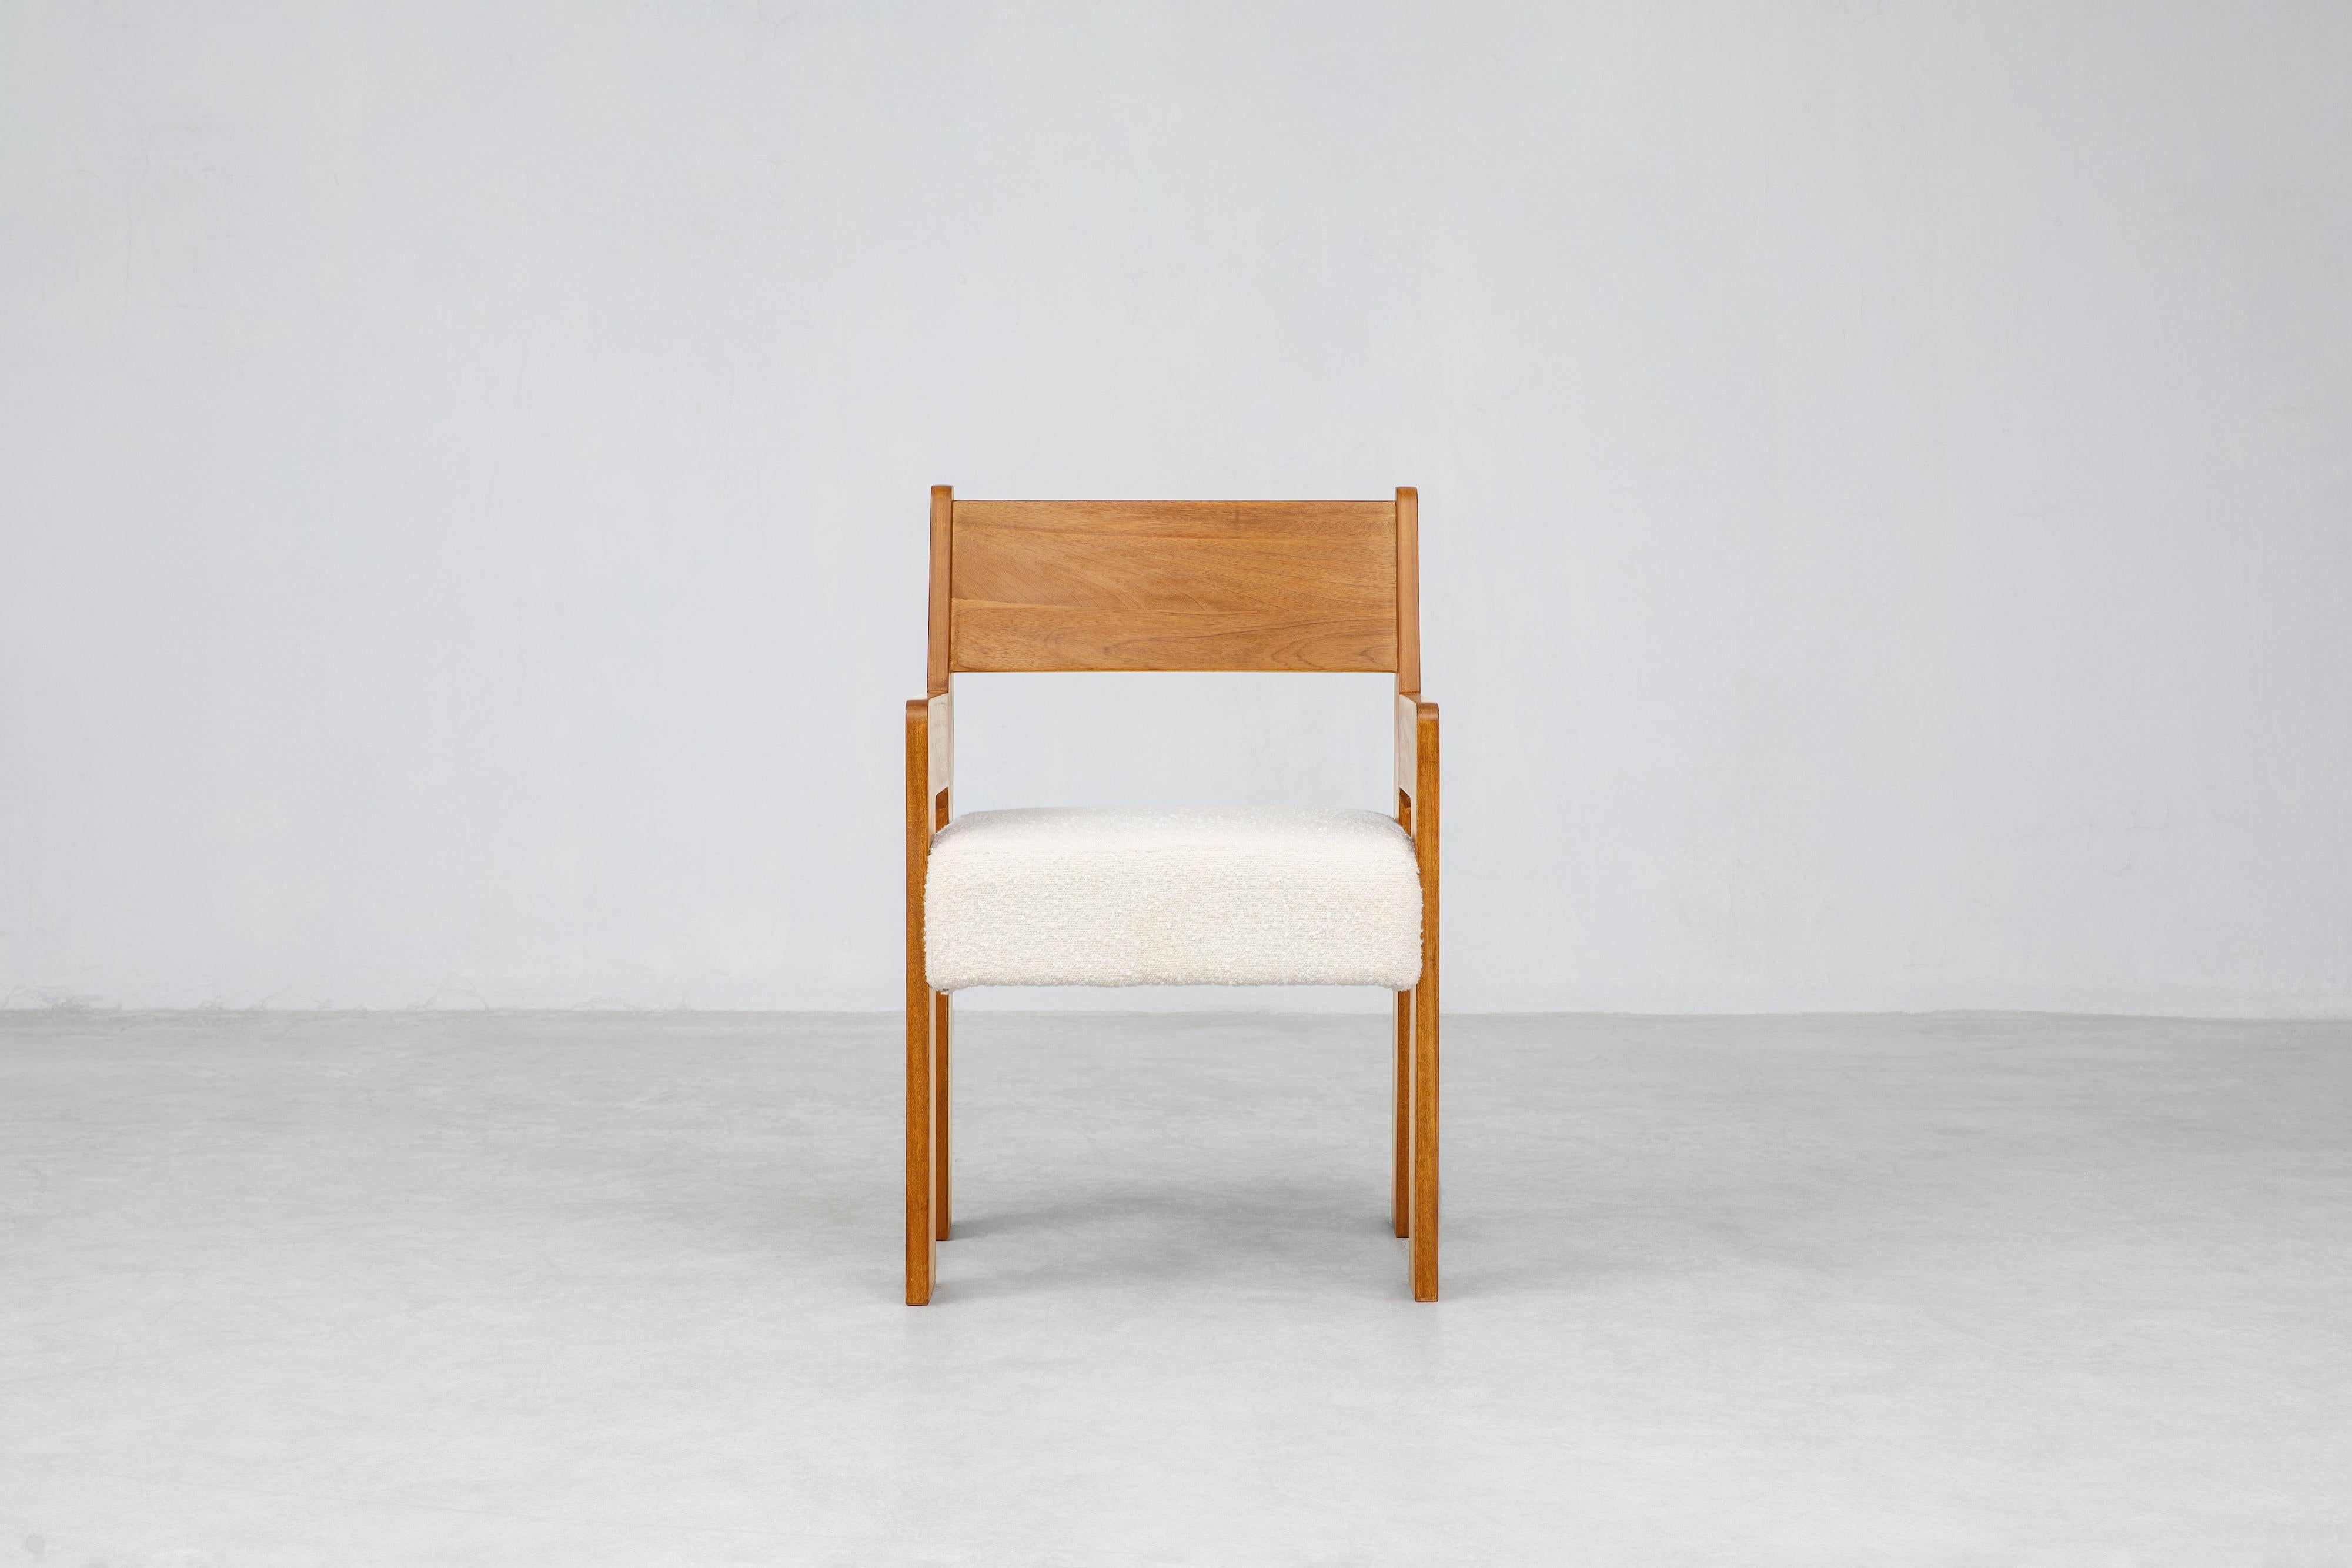 Der Reka-Sessel setzt auf kontrastreiche Breite. Bei der Gestaltung des Stuhls spielten wir mit breit und schmal, dick und dünn: Die Beine sind breit und flach entlang einer Achse, dünn entlang der anderen, während das Sitzkissen in die Länge